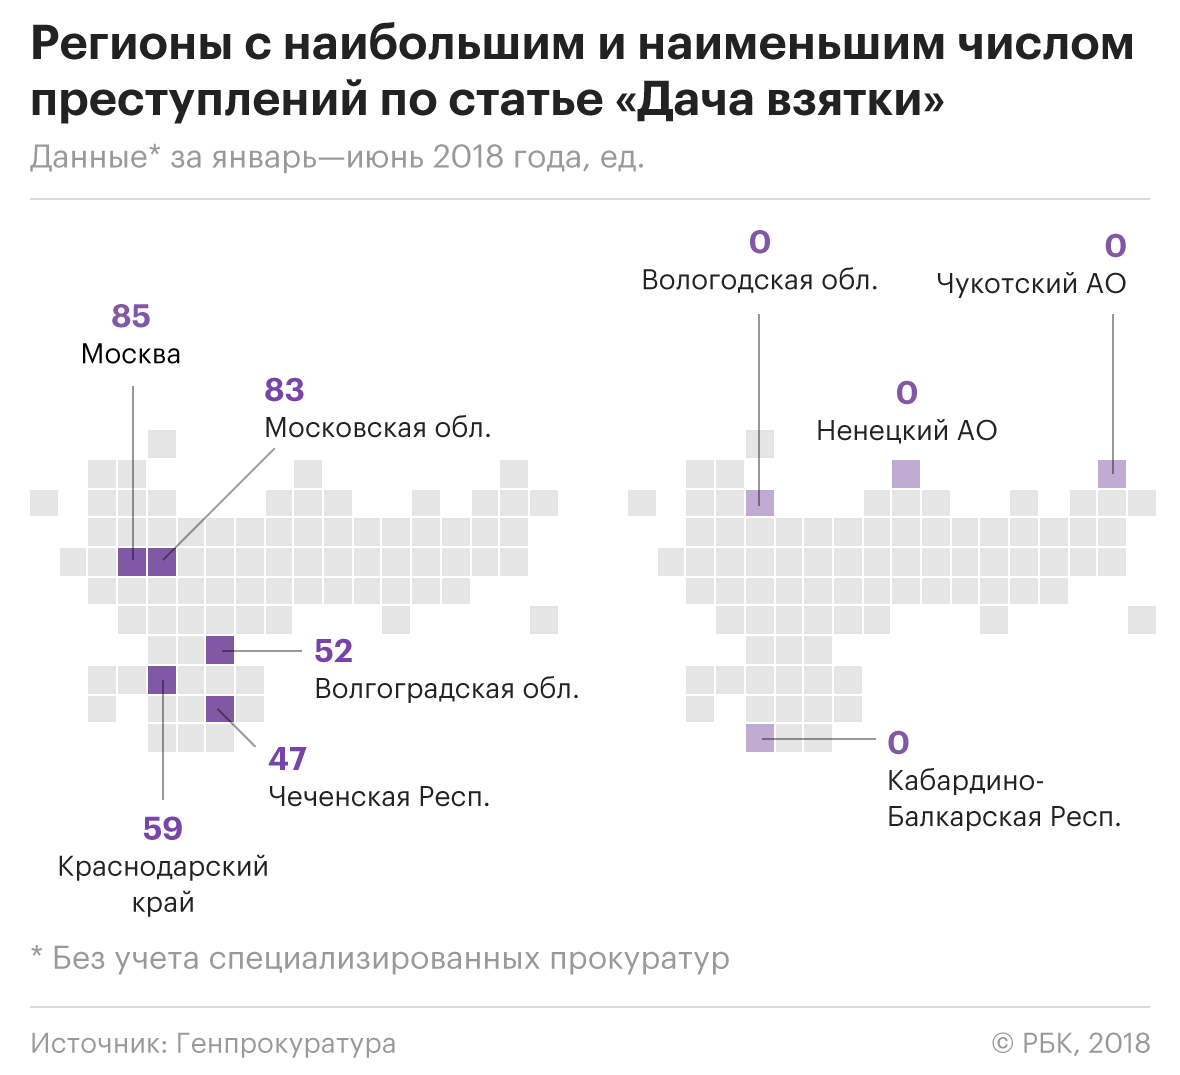 На каждый миллион россиян в 2018 году пришлось 24 выявленных взяточника